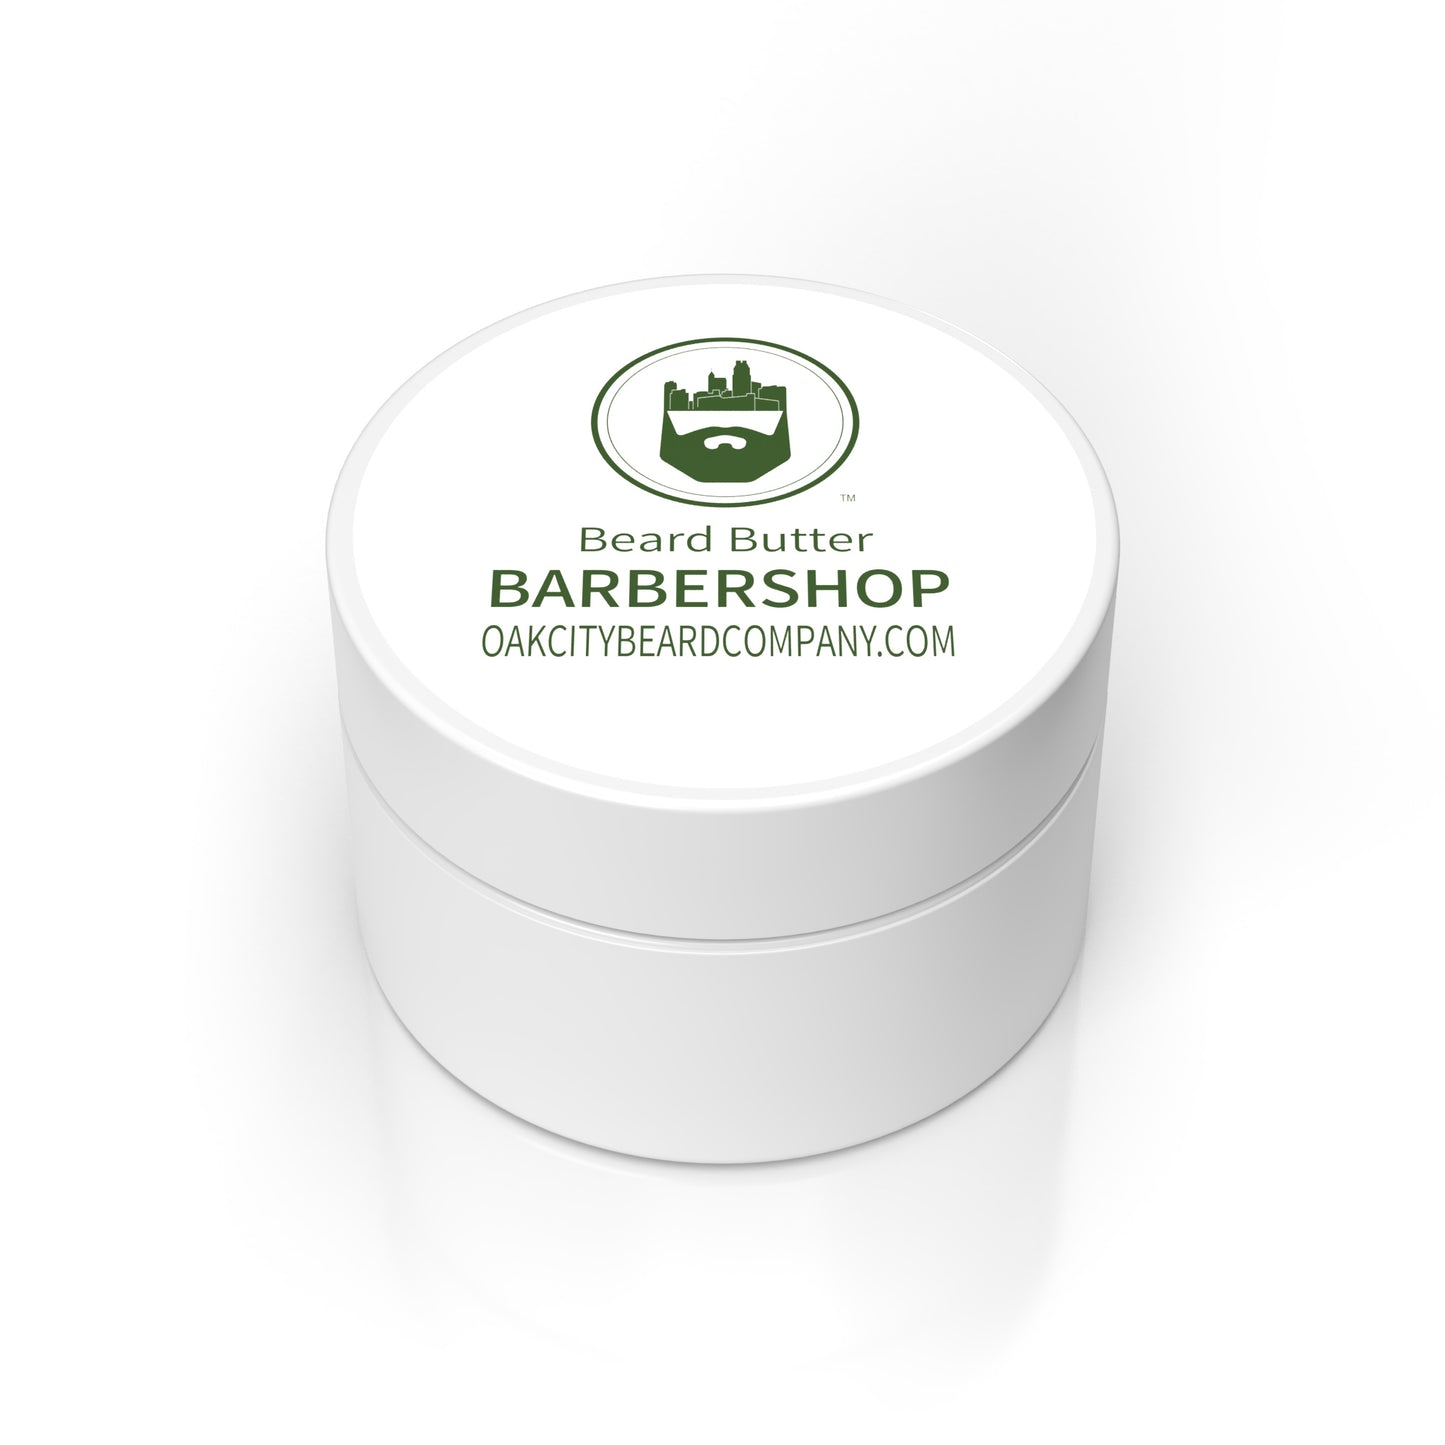 BarberShop (Beard Butter) by Oak City Beard Company